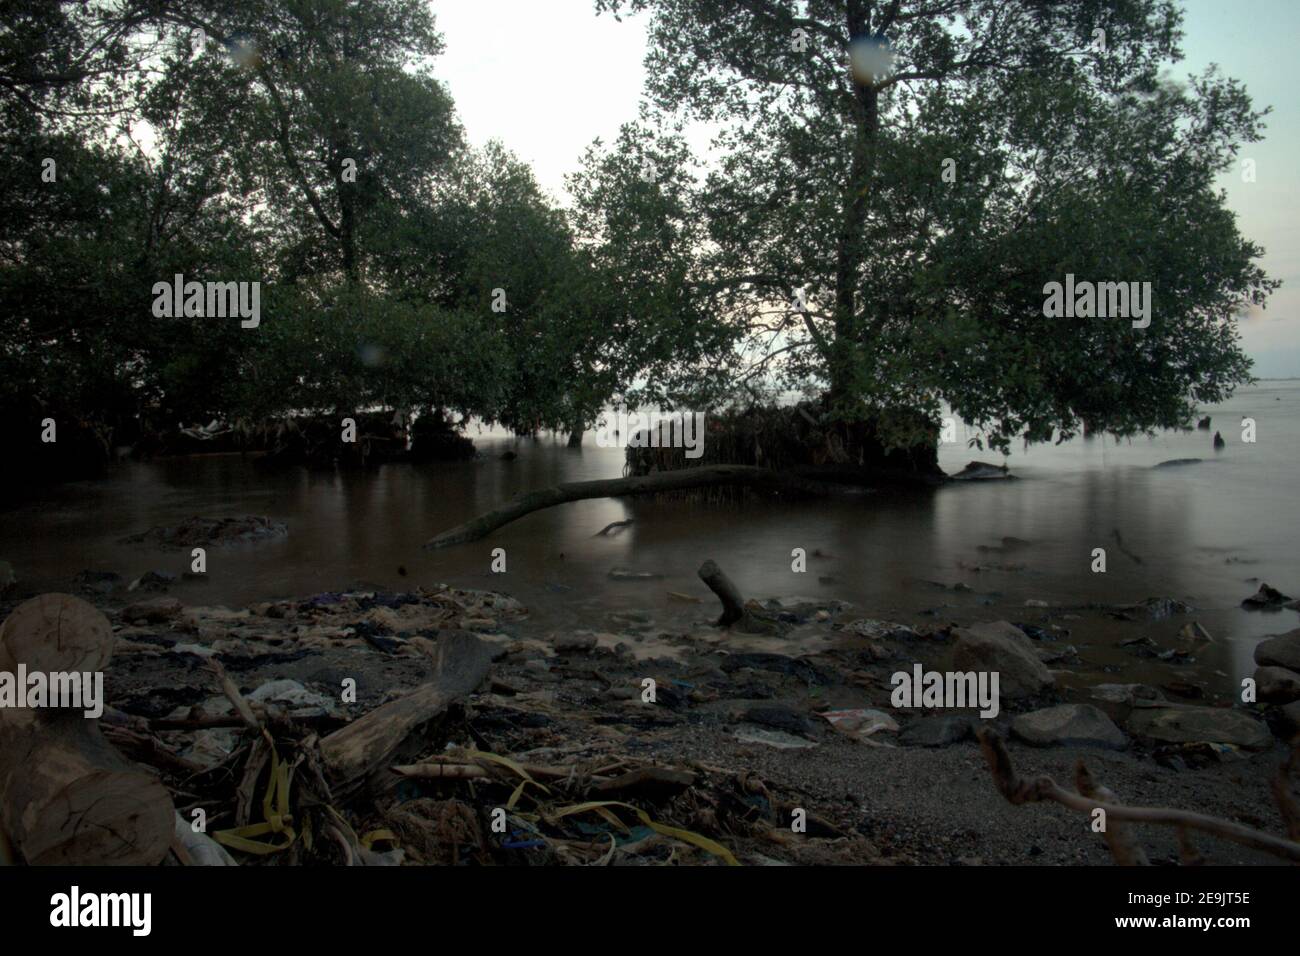 Alberi di mangrovie sull'altra parte della spiaggia di Pantai Indah Kapuk, vicino ad un complesso residenziale nella zona costiera di Giacarta, Indonesia. Foto Stock